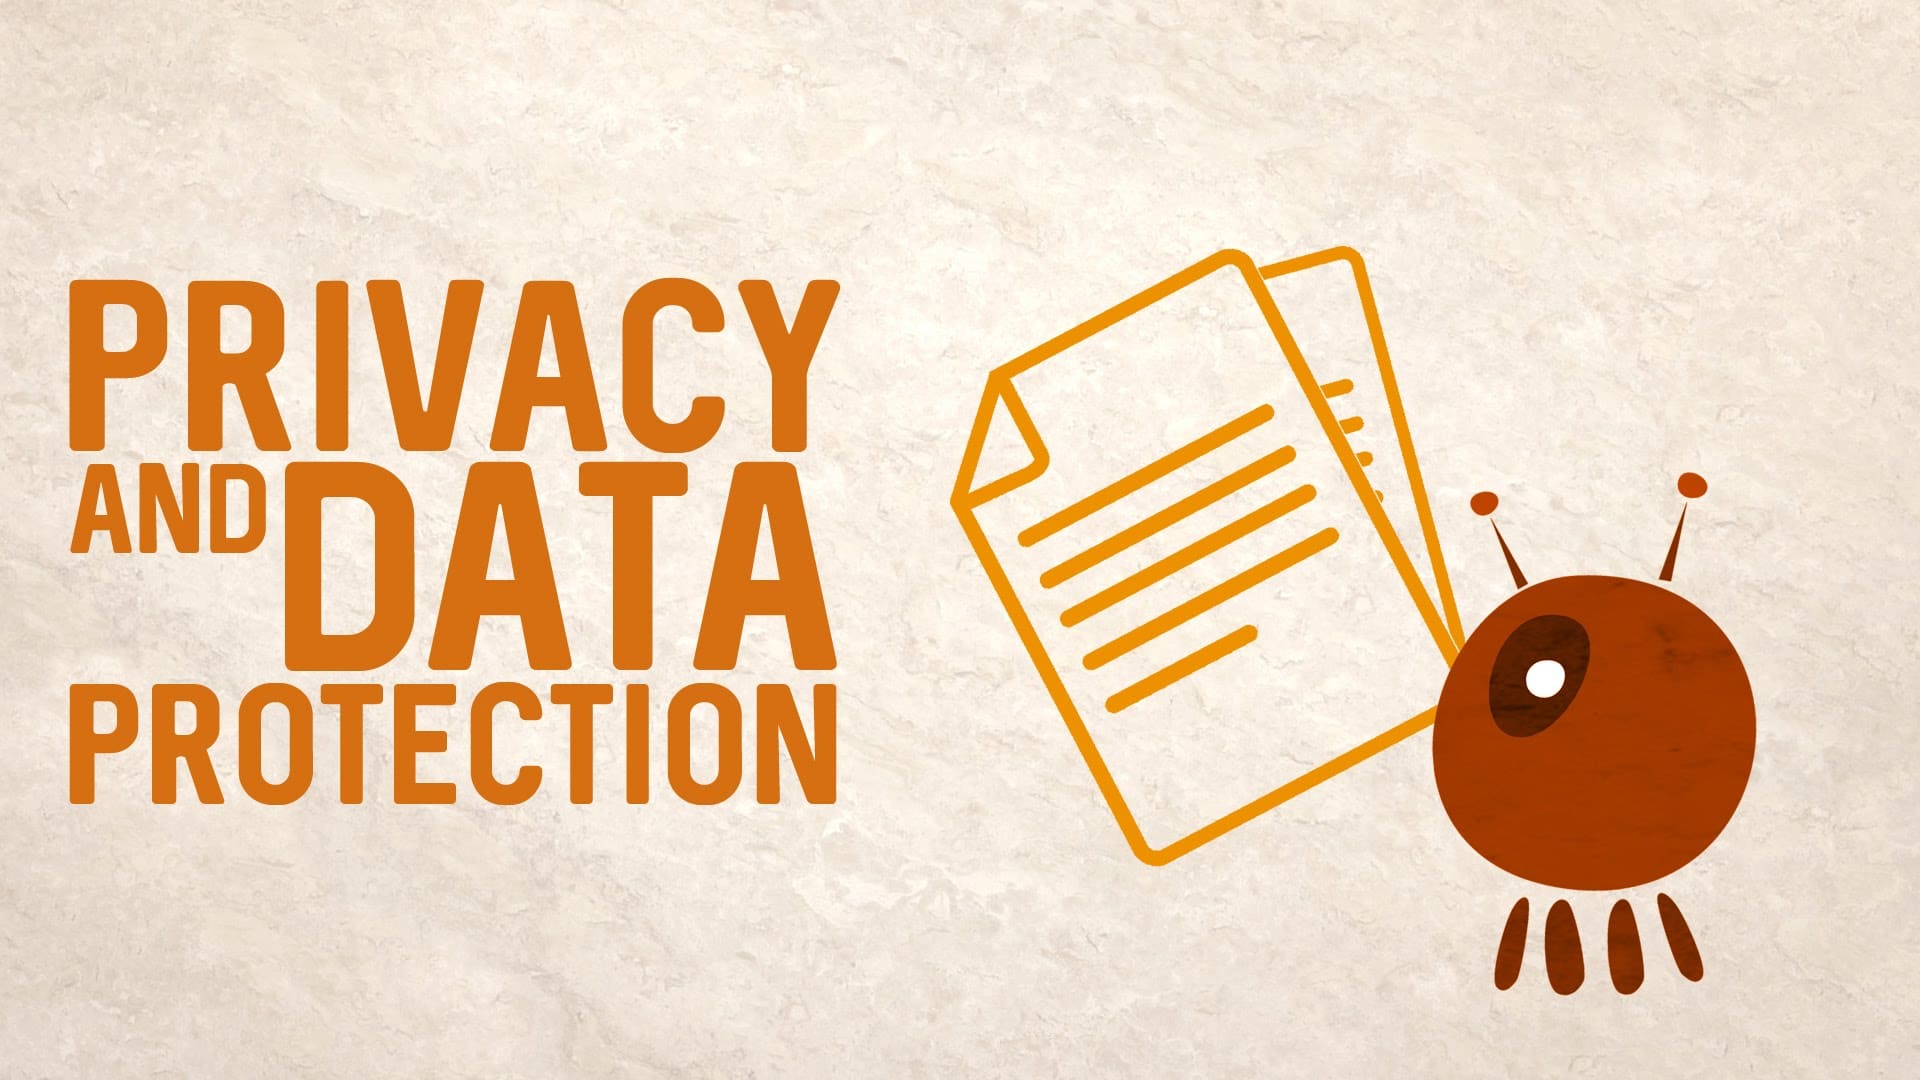 data privacy pro and con